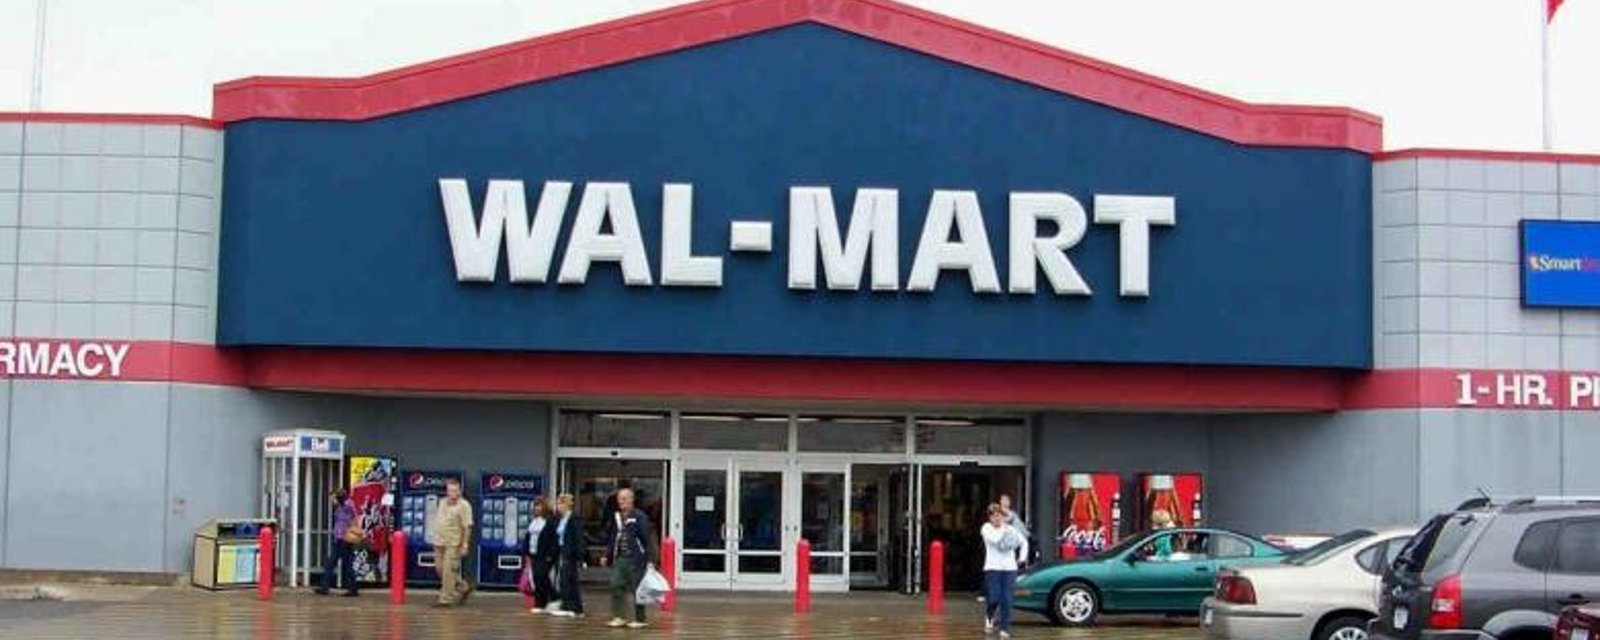 Changement important à prévoir pour les clients réguliers des Wal-Mart du Québec